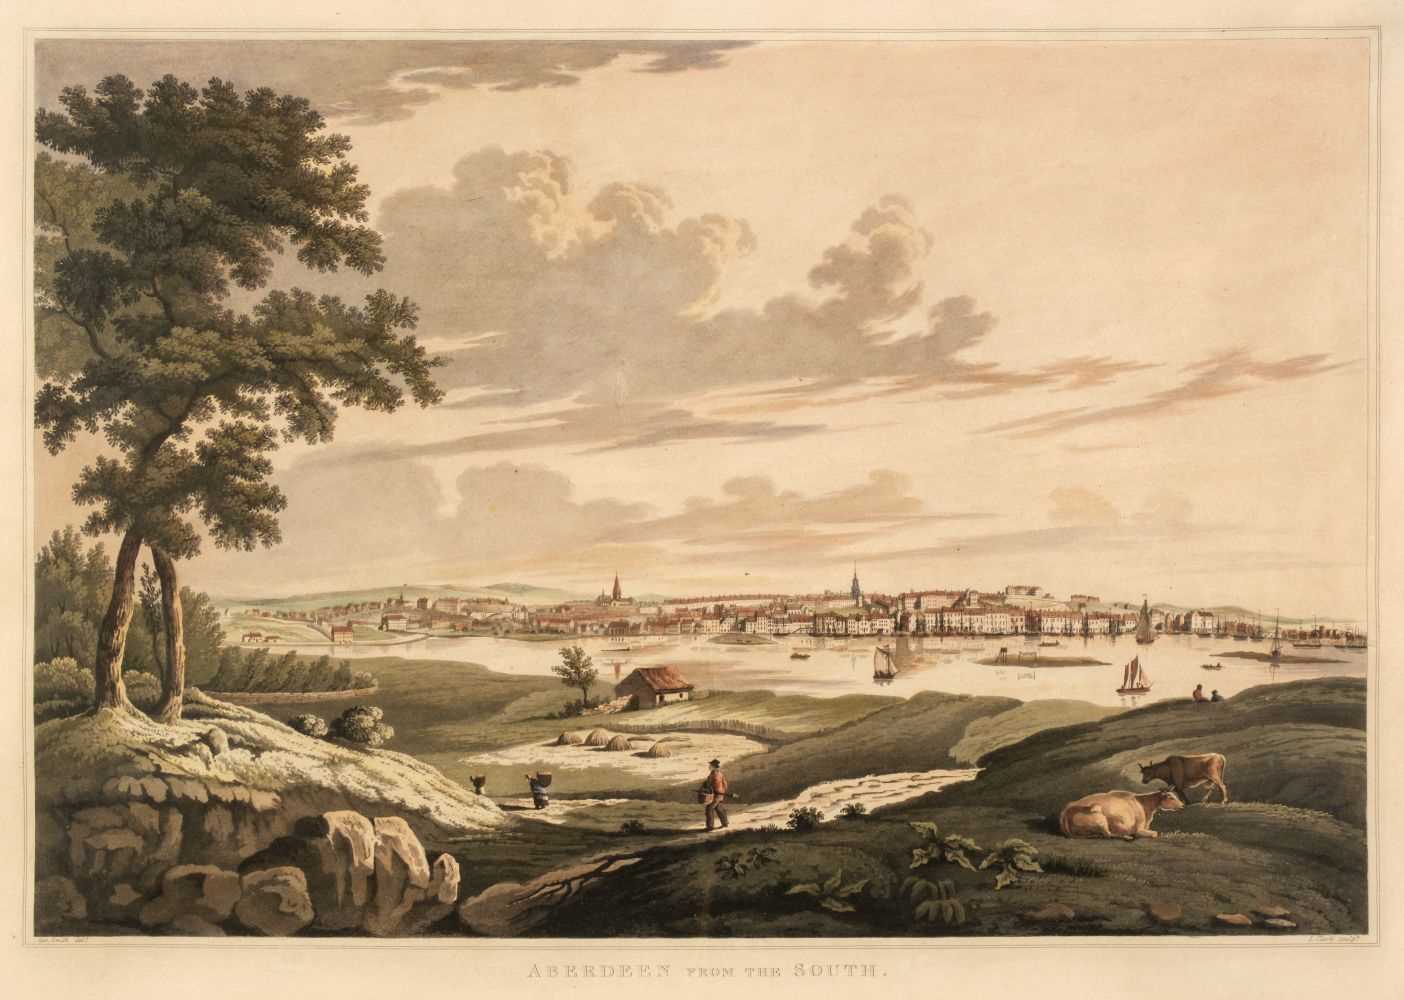 Lot 515 - Aberdeen. Clark (John), Aberdeen from the South, circa 1822